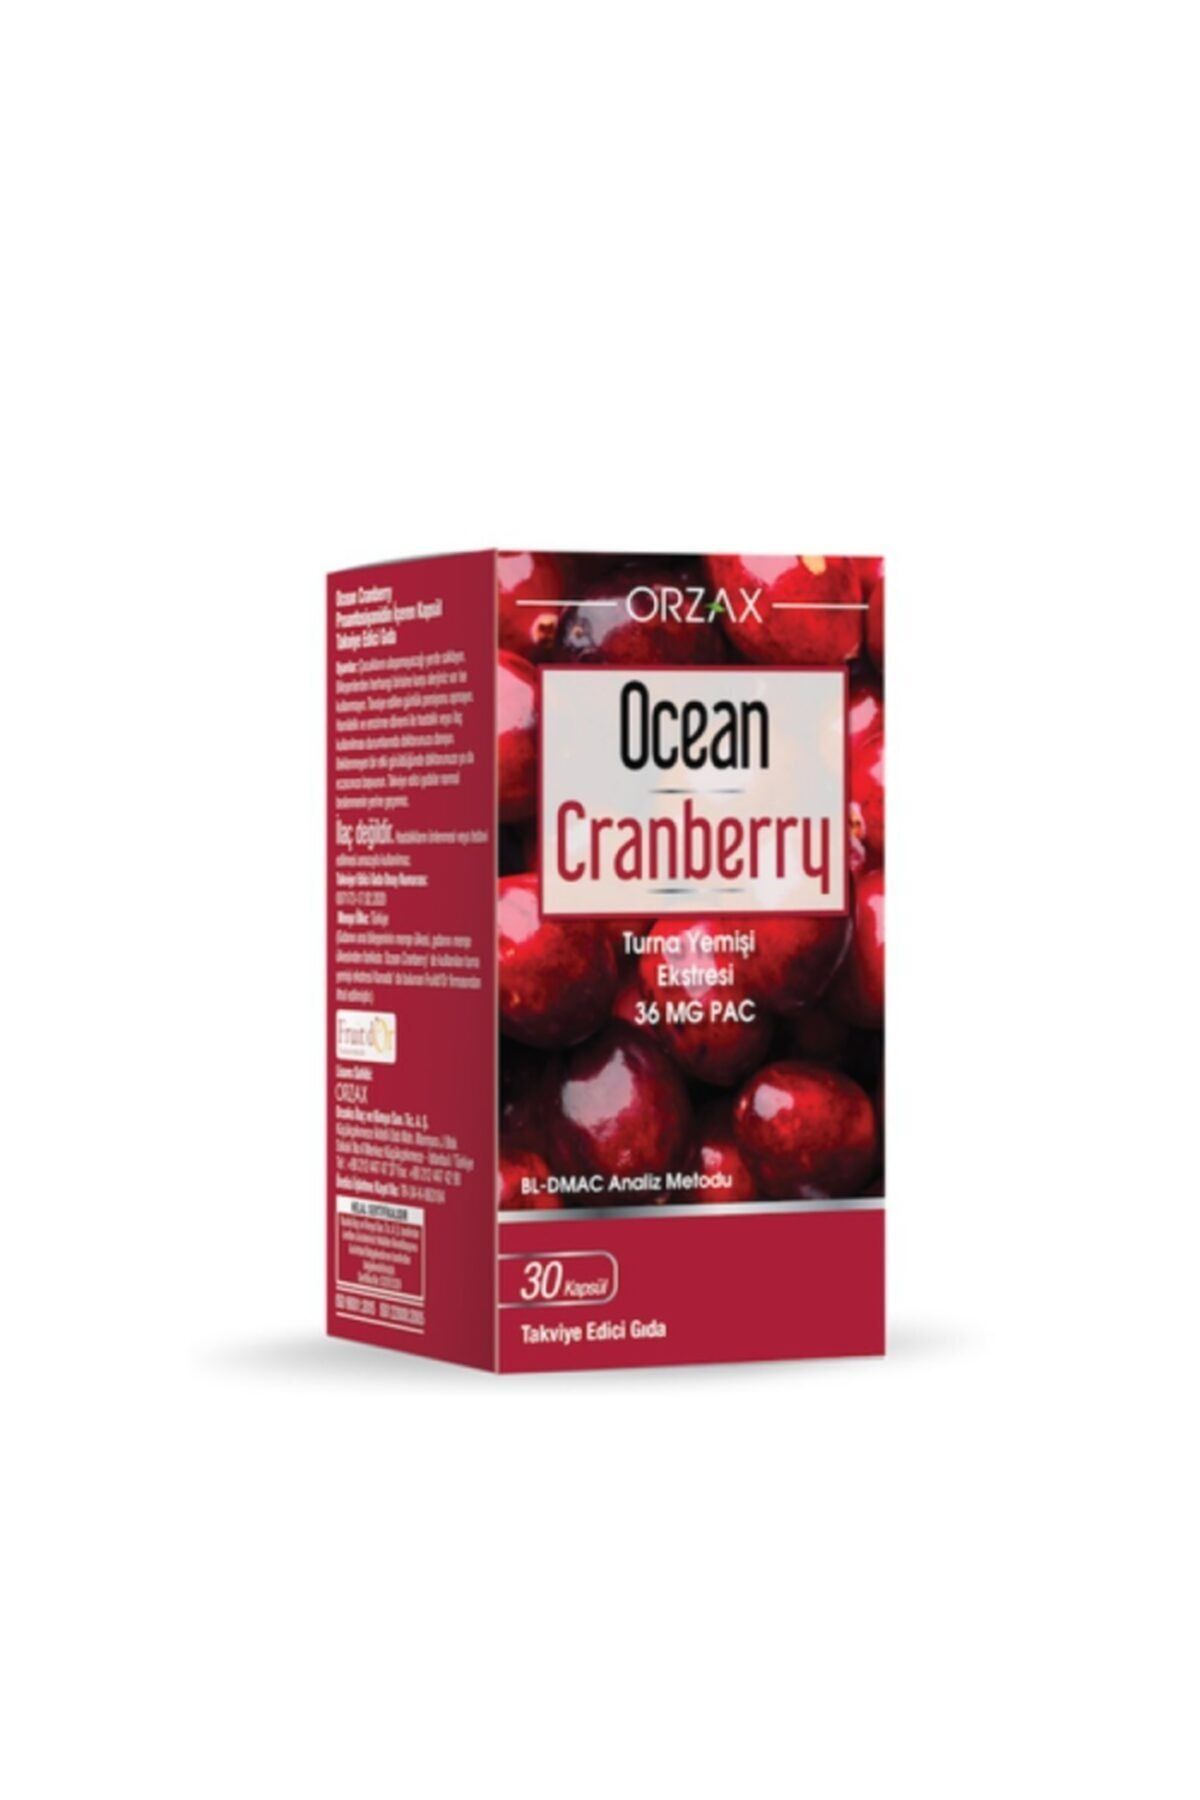 Ocean Orzax Cranberry Turna Yemişi Ekstresi 30 Tablet Takviye Edici Gıda